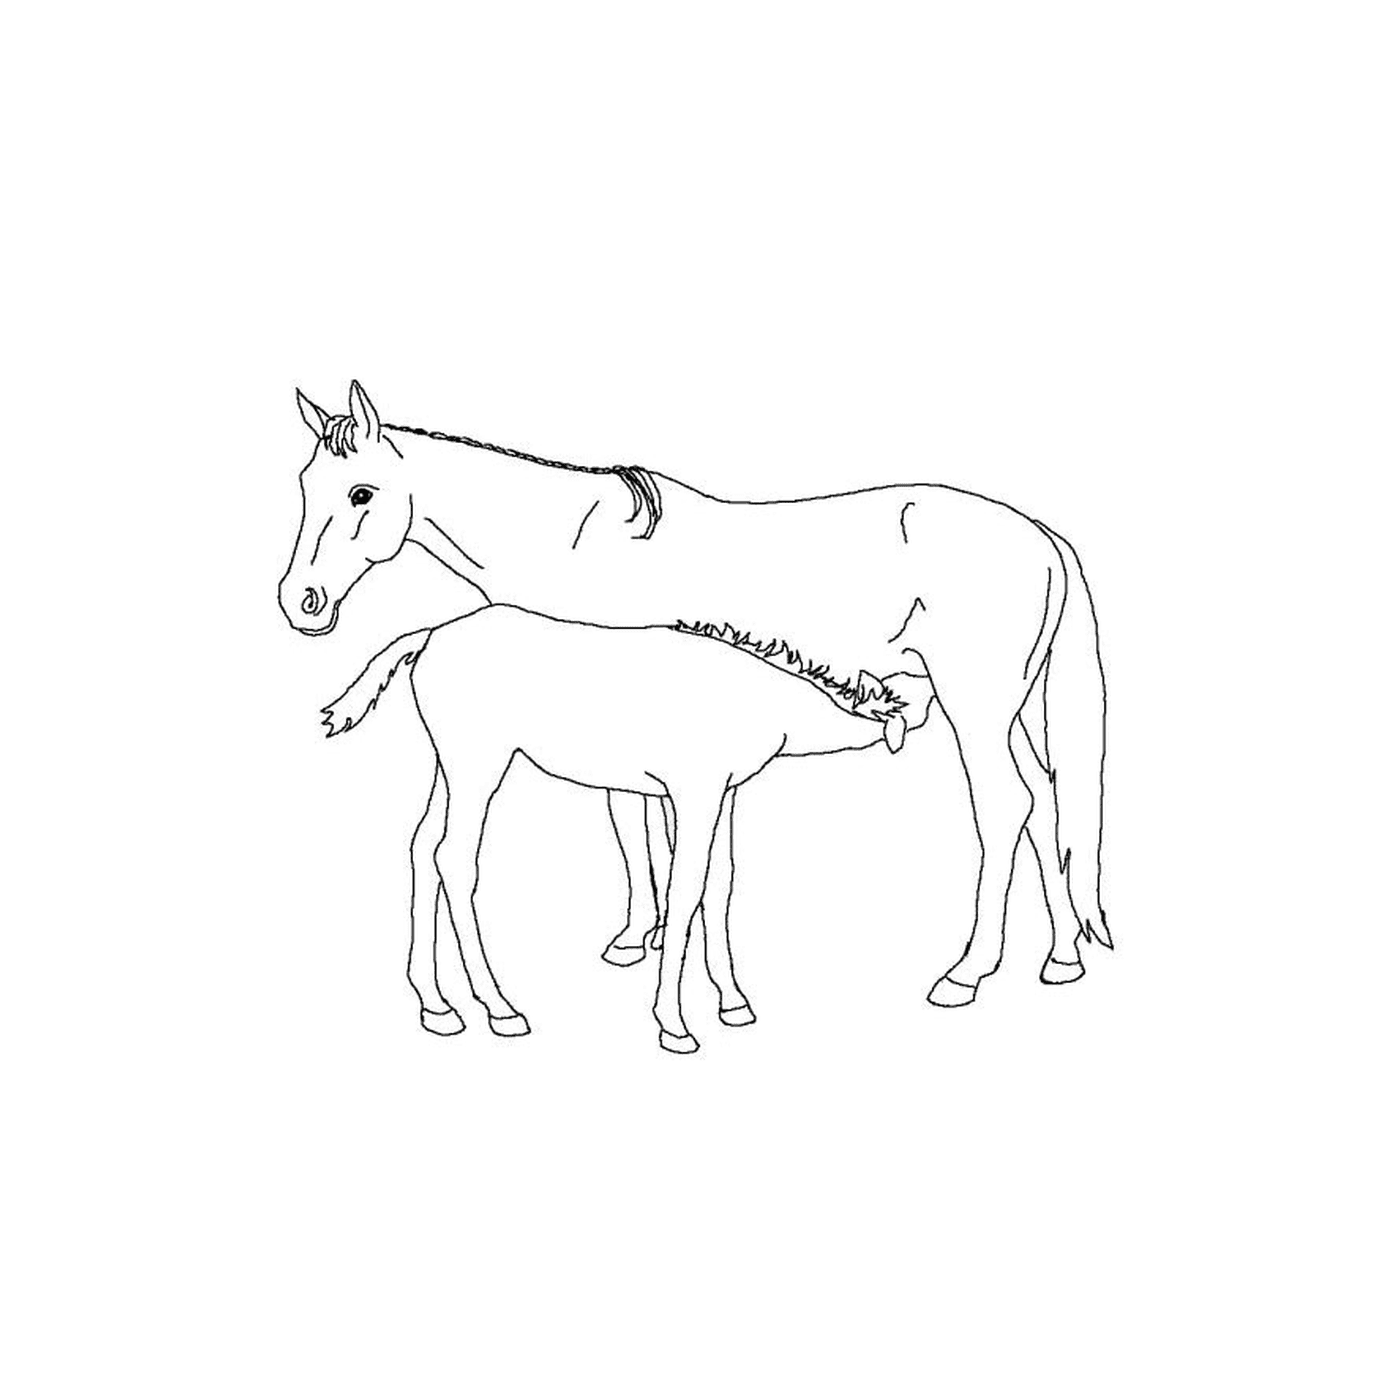  Cavalli di pollame - Un cavallo e un puledro fianco a fianco 